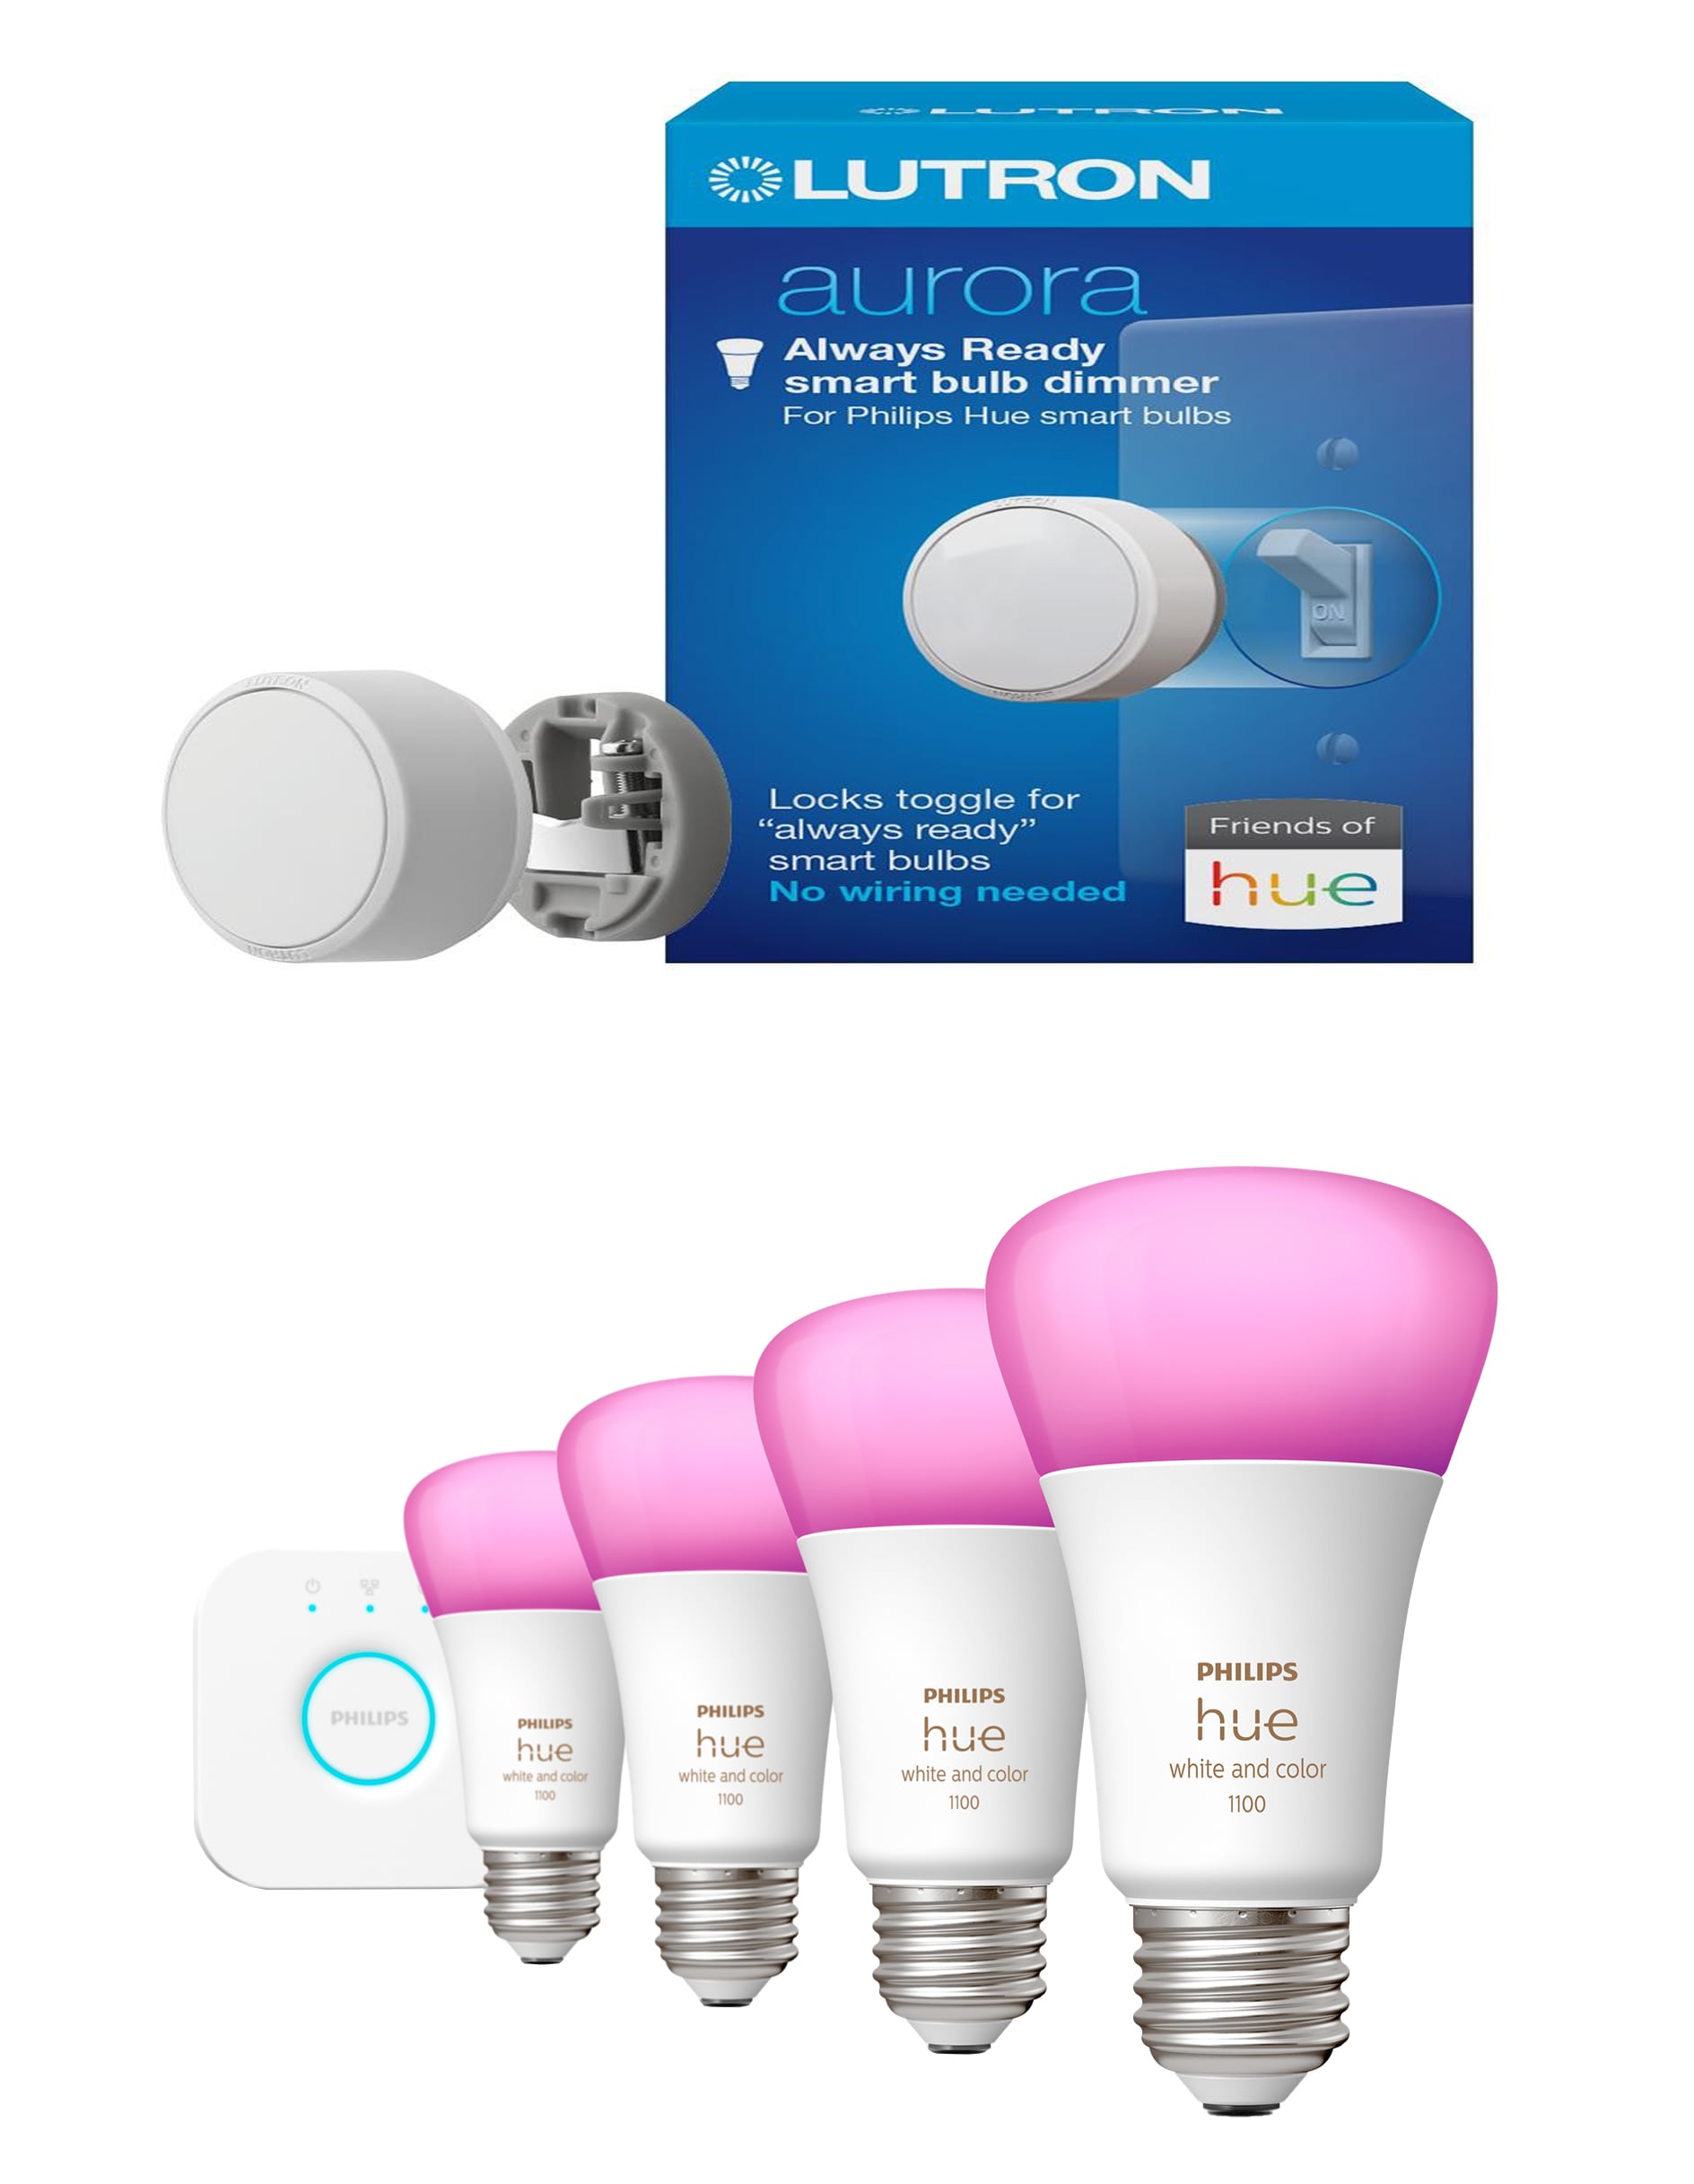 Philips Hue Dimmable Smart LED Light Bulb (4-Pack) & Lutron Aurora Light Dimmer Switch, White